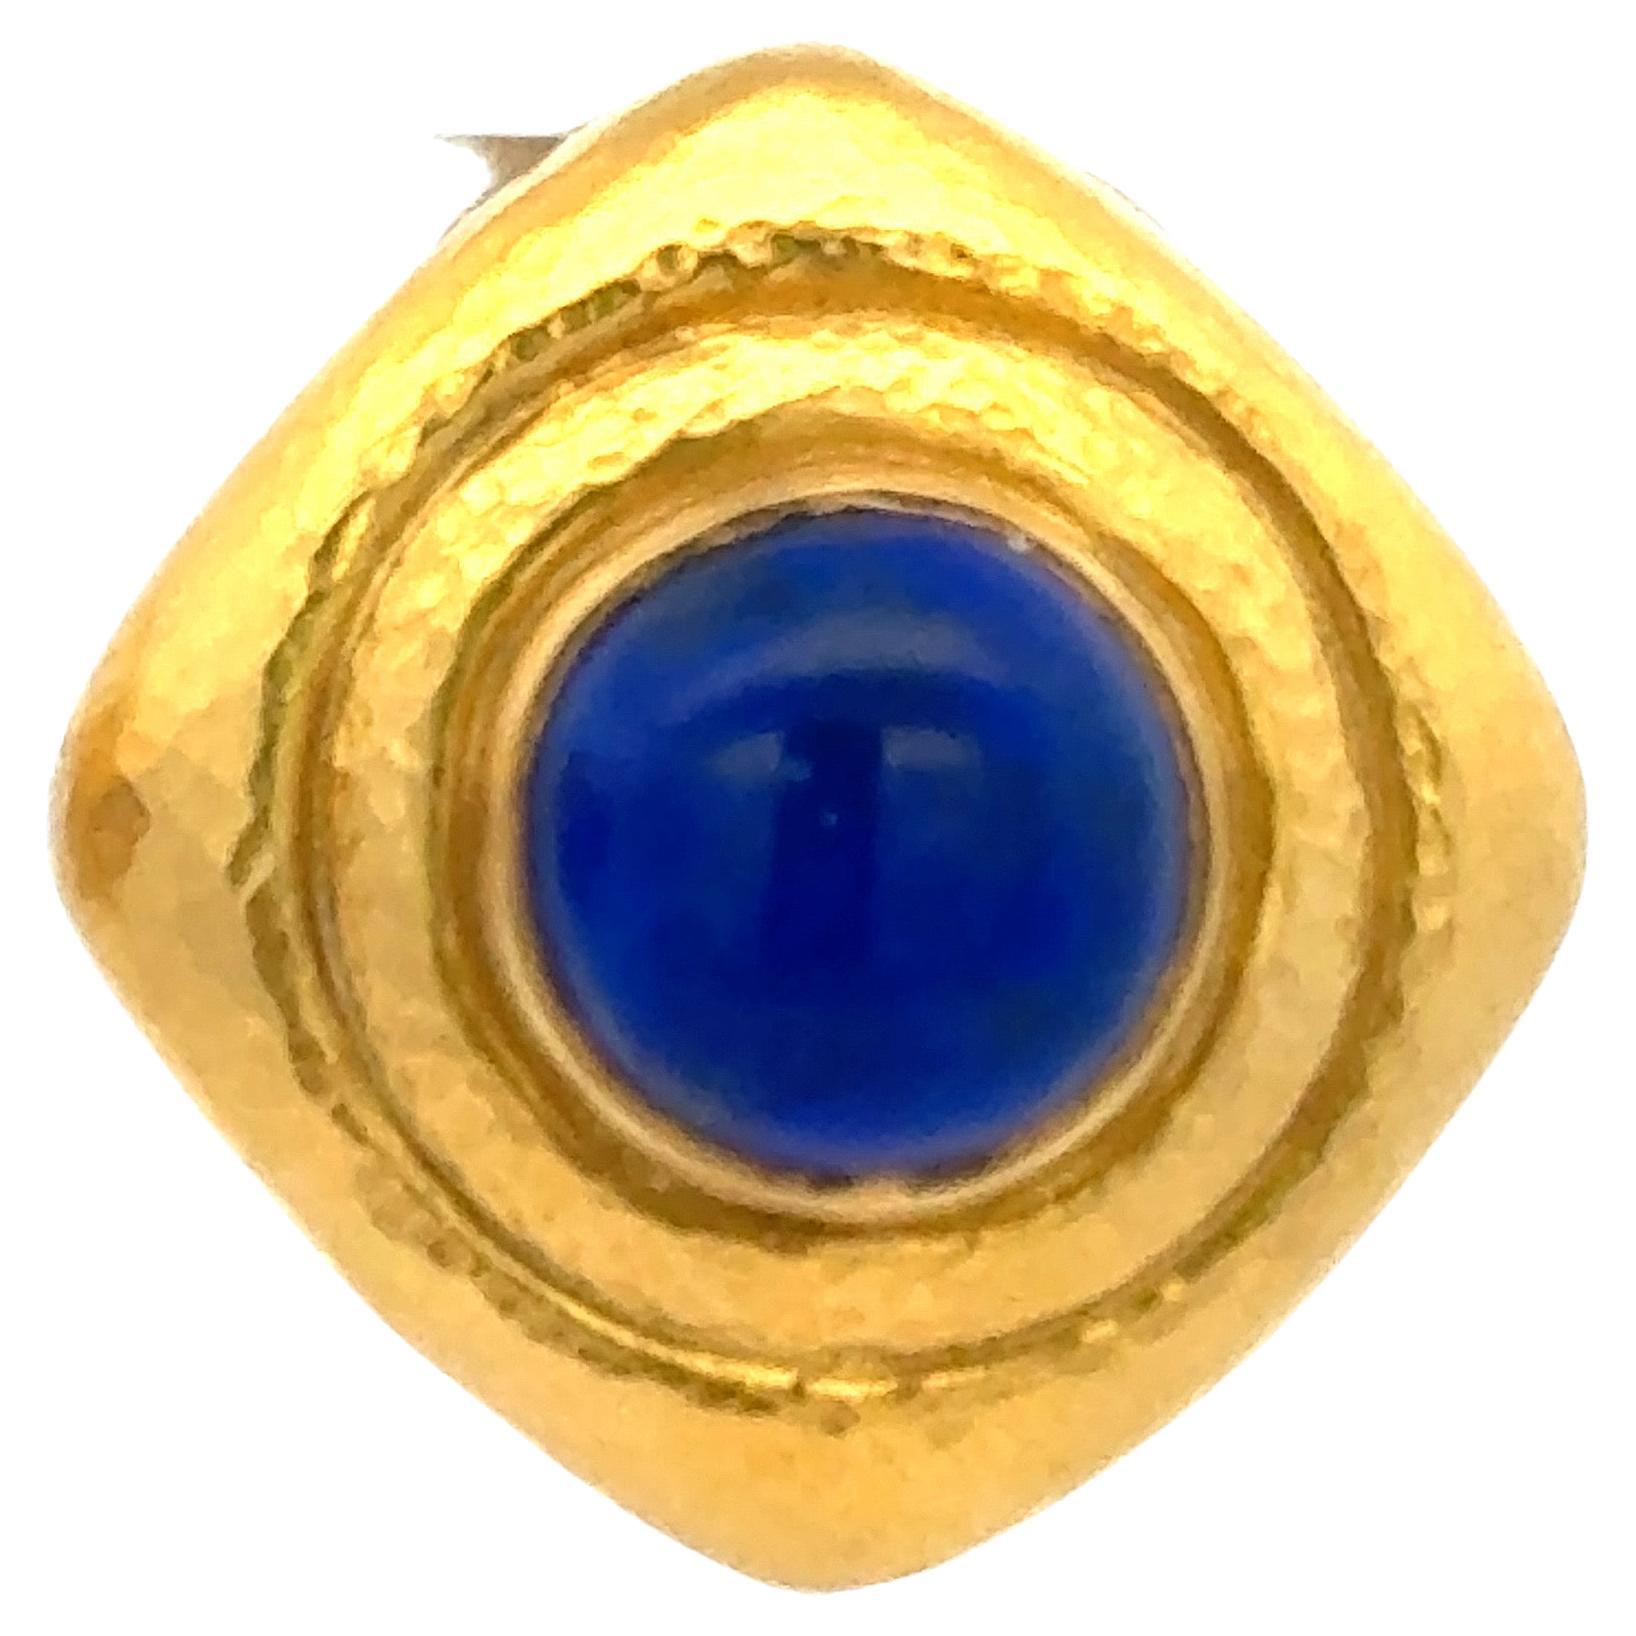 Signiert Zolotas diese Clip auf Ohrstecker mit zwei runden Lapis montiert auf 22 Karat Gelbgold.
Passende Halskette ist erhältlich. 